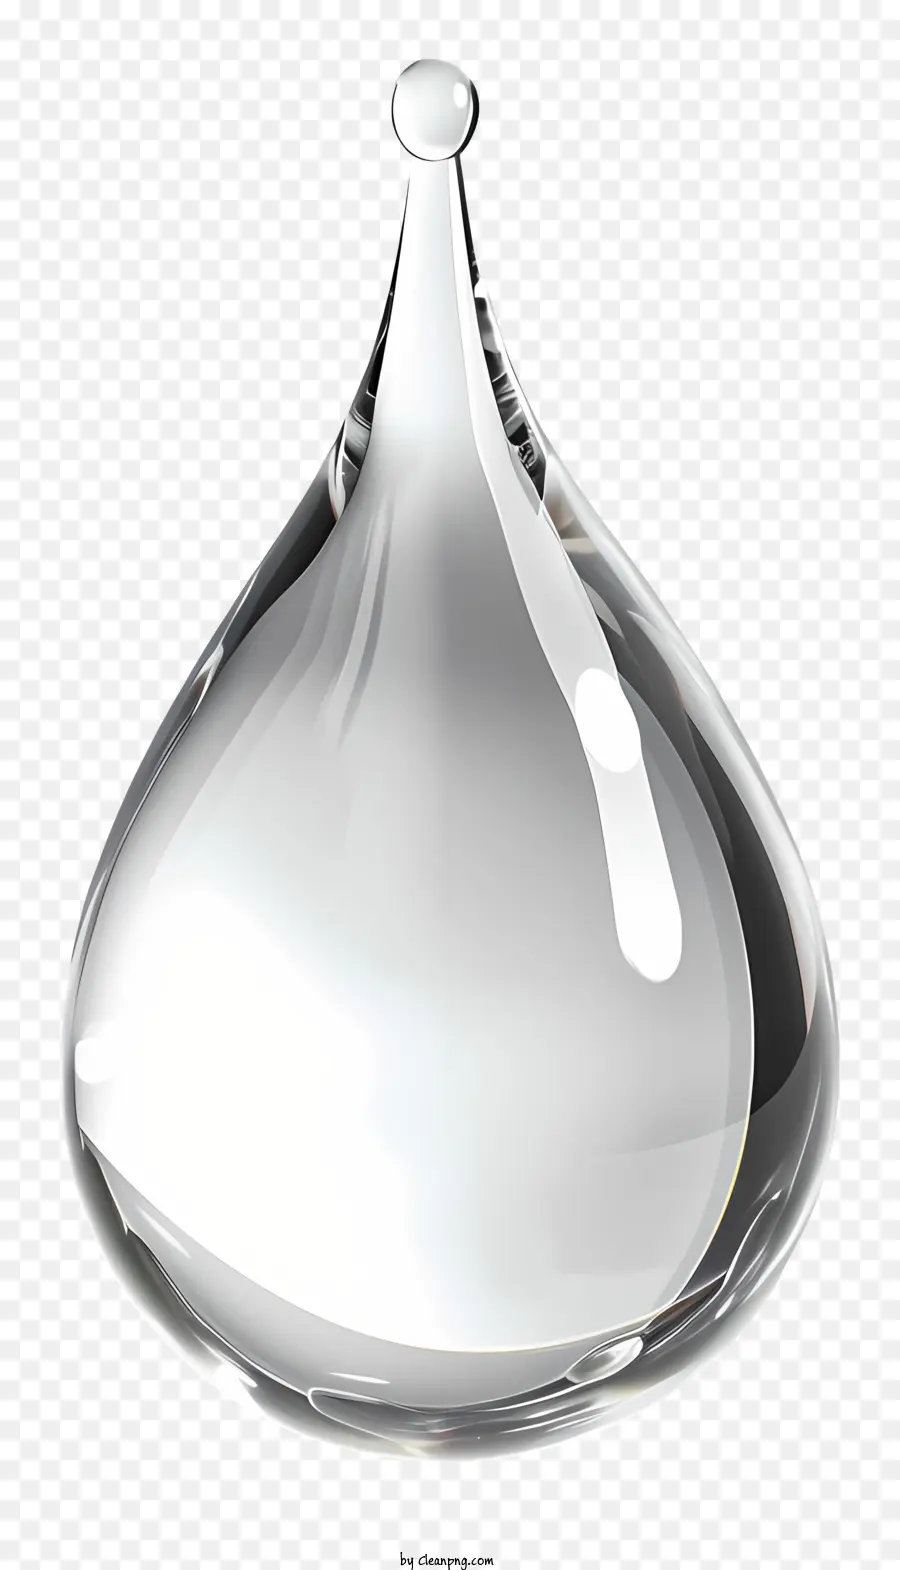 goccia d'acqua - Immagine: vaso di cristallo con grande cristallo chiaro